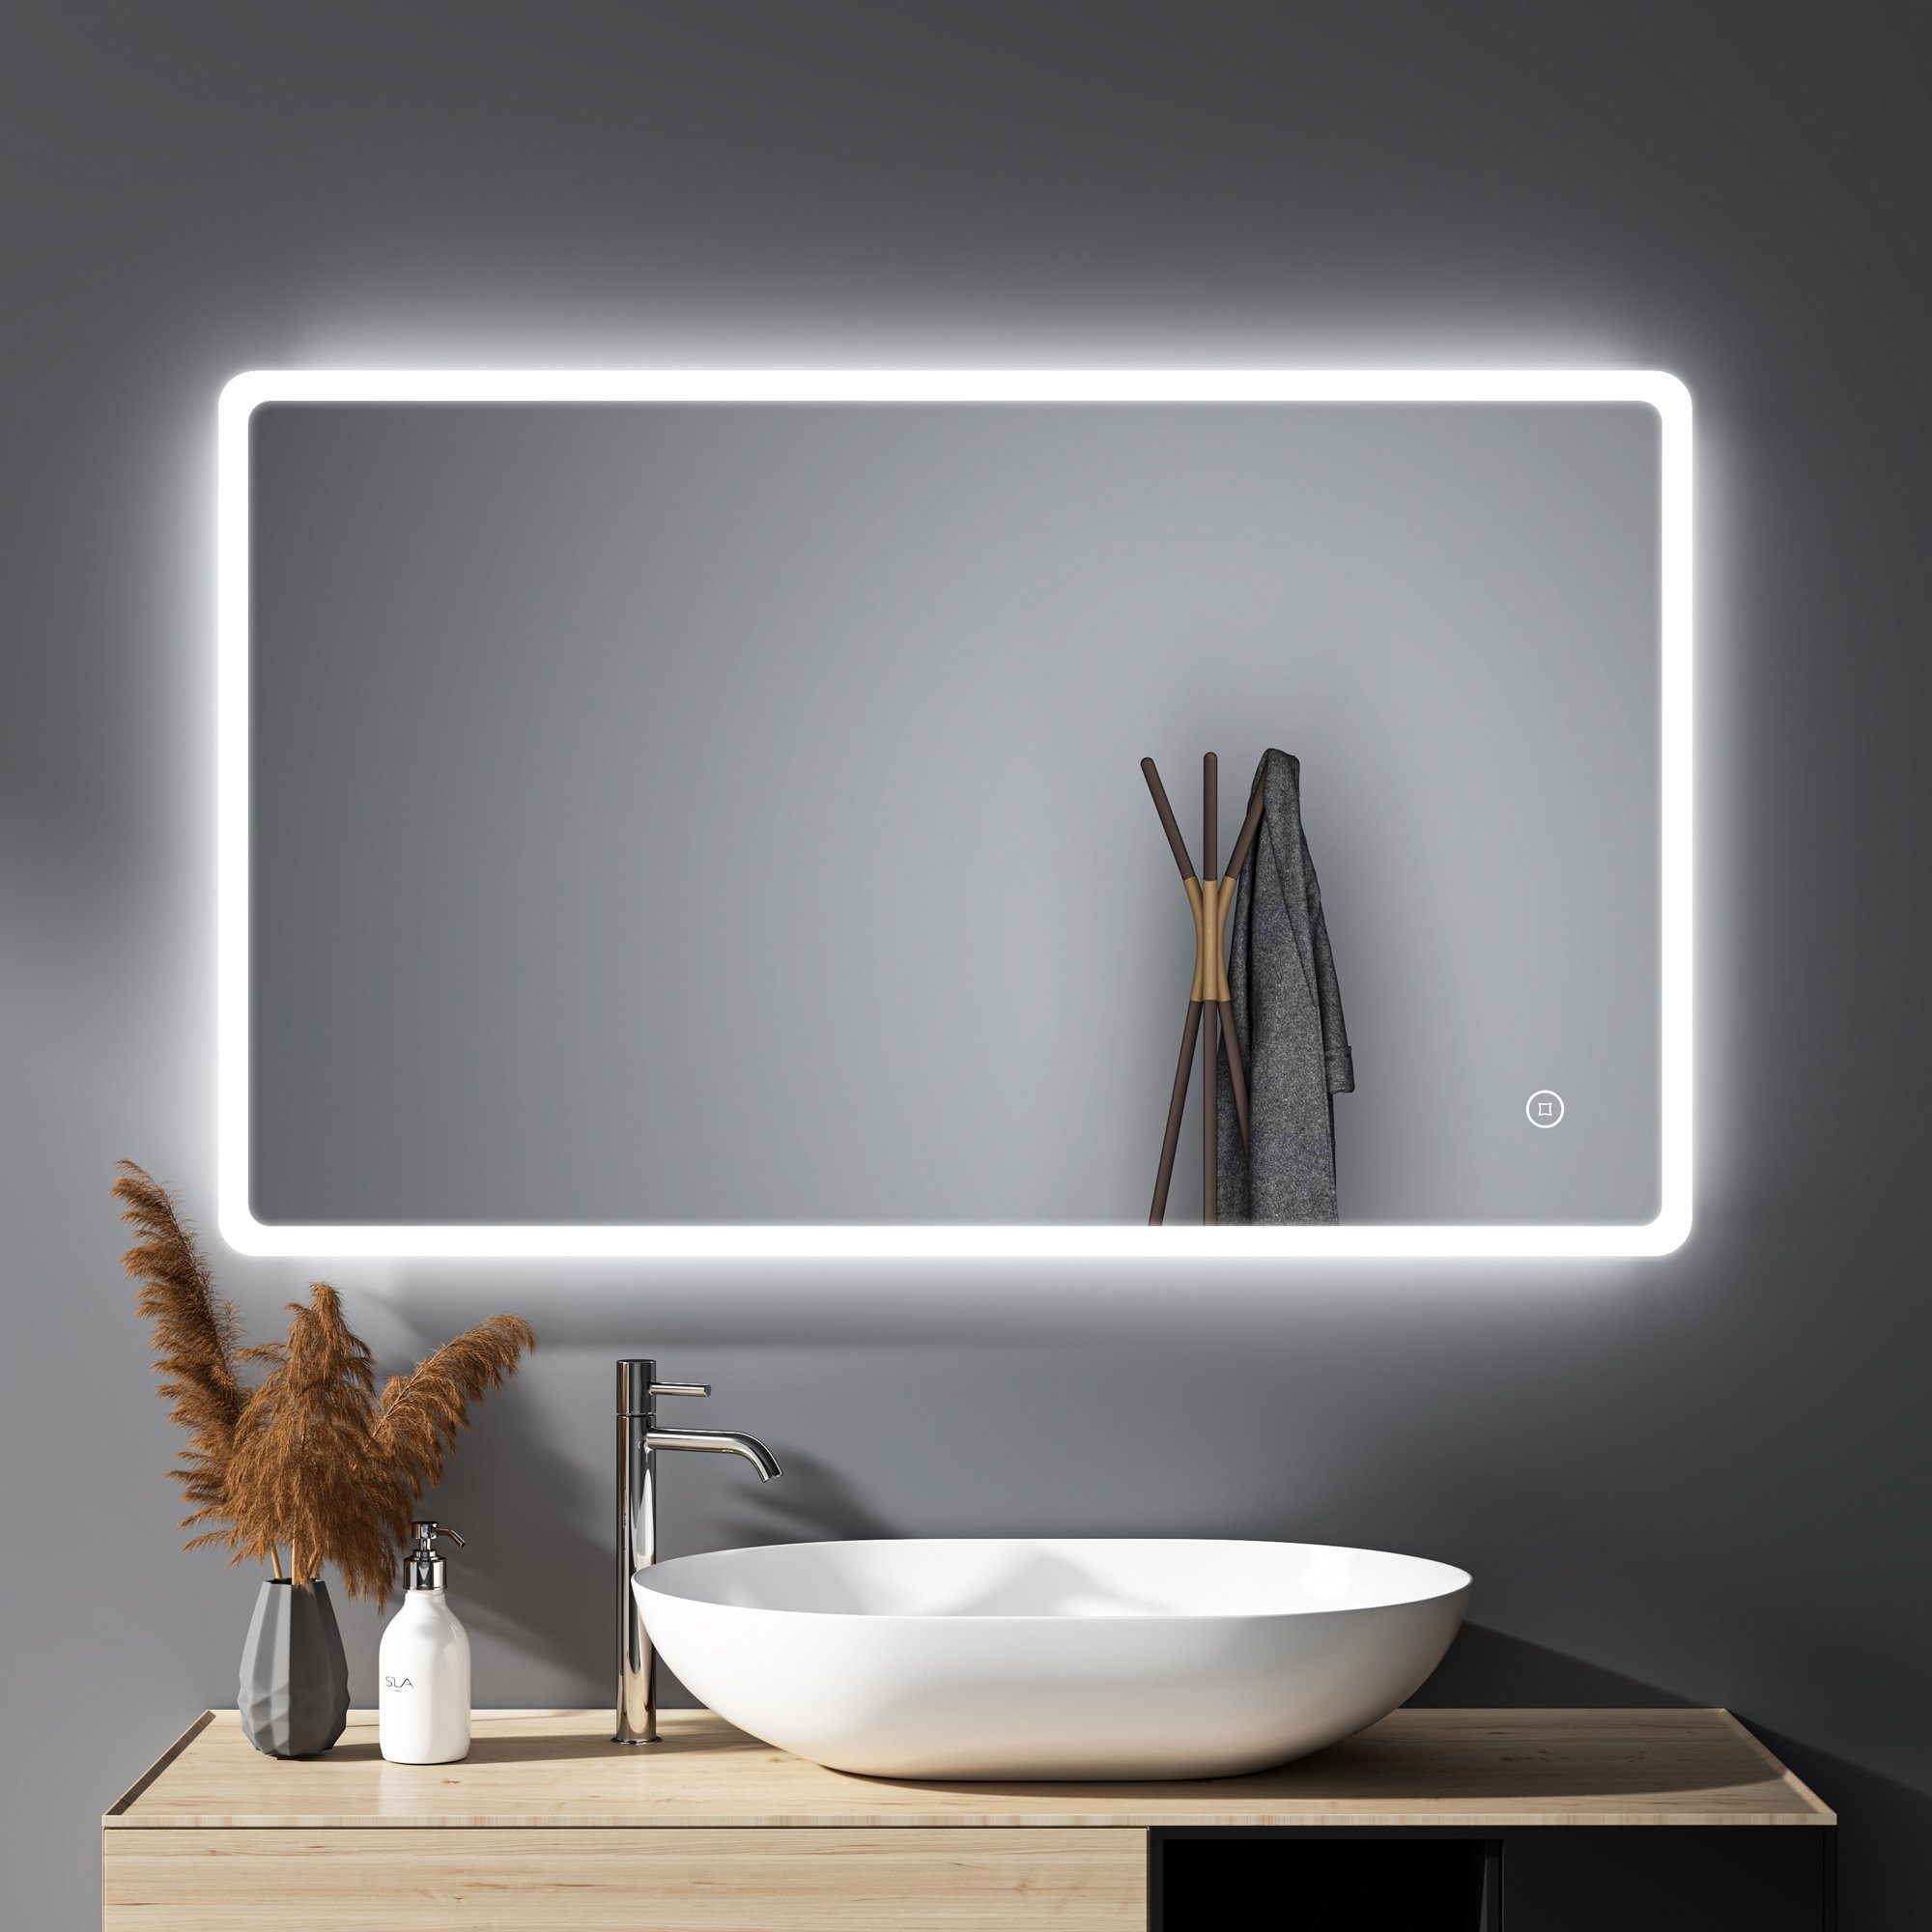 WDWRITTI Spiegel Bad groß 100x60 Badspiegel Led mit Beleuchtung Touch Wandschalter (wandspiegel groß, Helligkeit dimmbar, Speicherfunktion), 3000/4000/6500K, Vertikal Horizontal, IP44